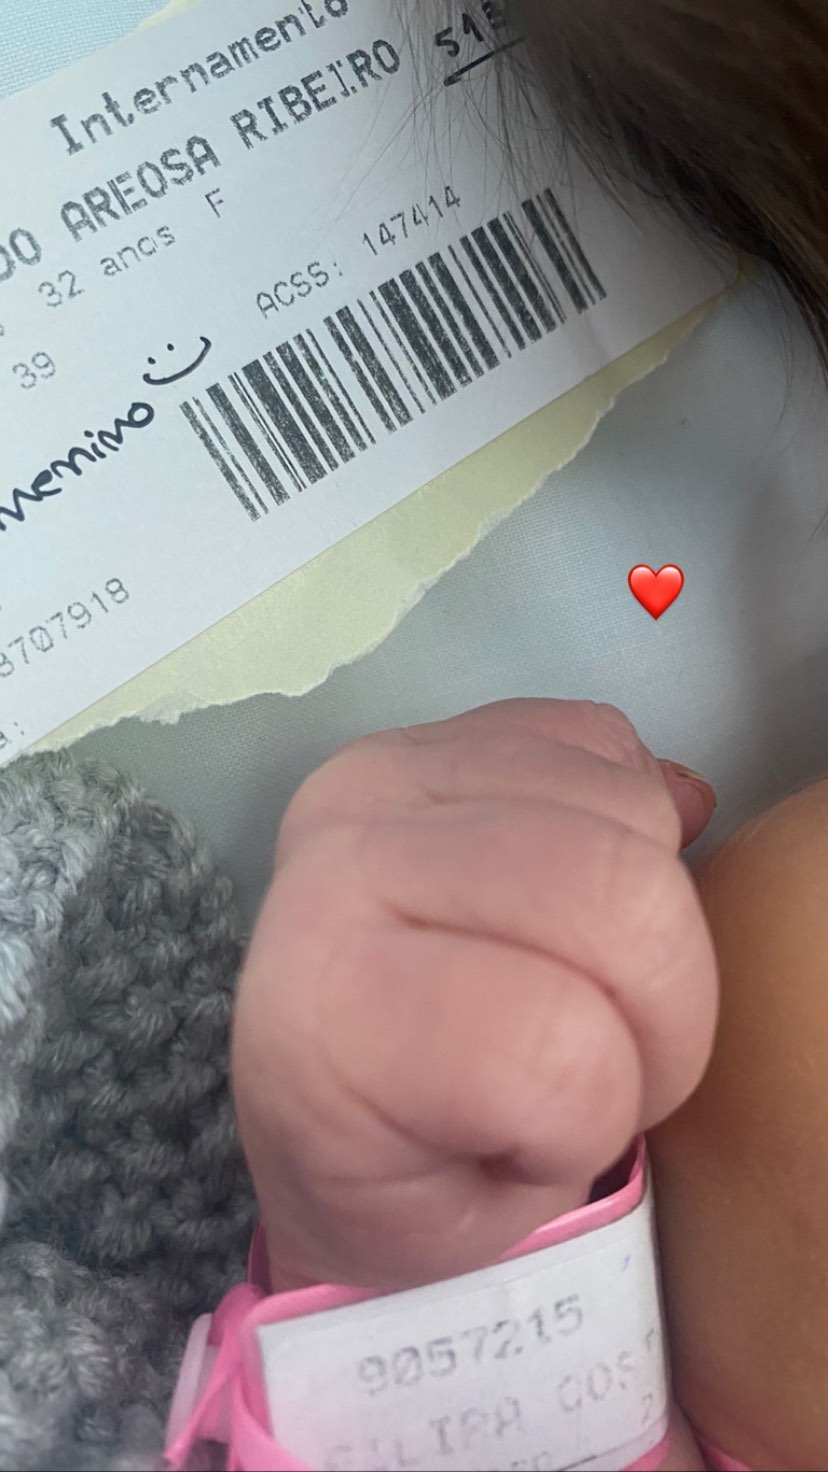 Filipa Areosa confirma nascimento do filho com foto do bebé nas redes sociais